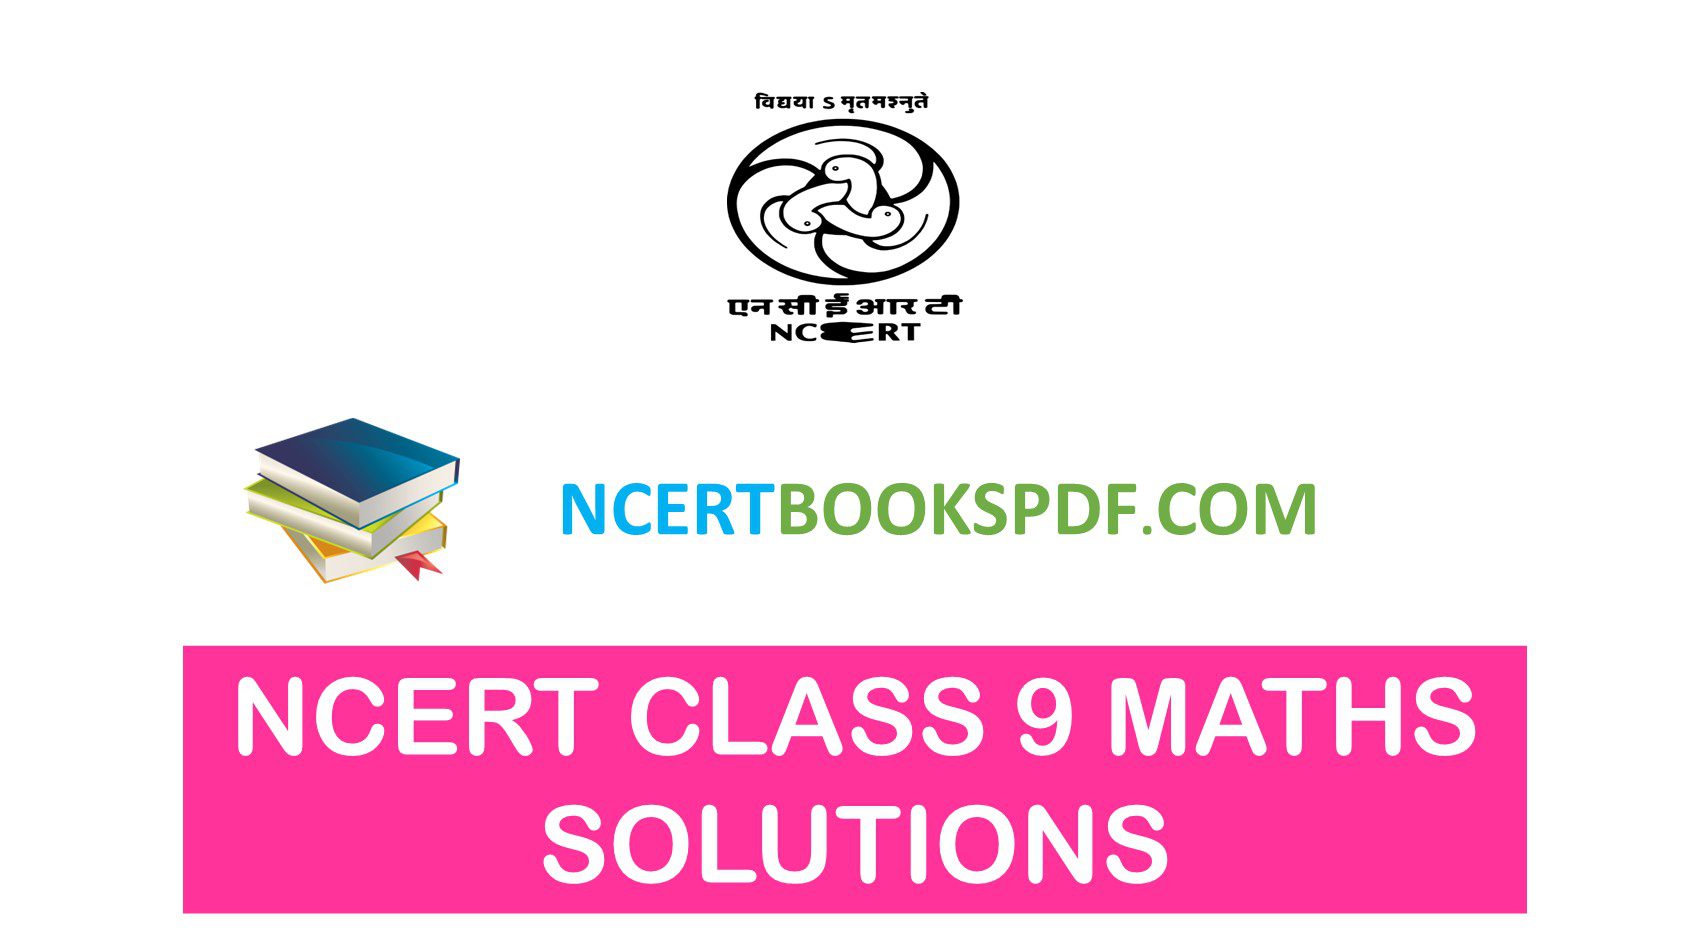 Ncert Class 9 Maths Solutions